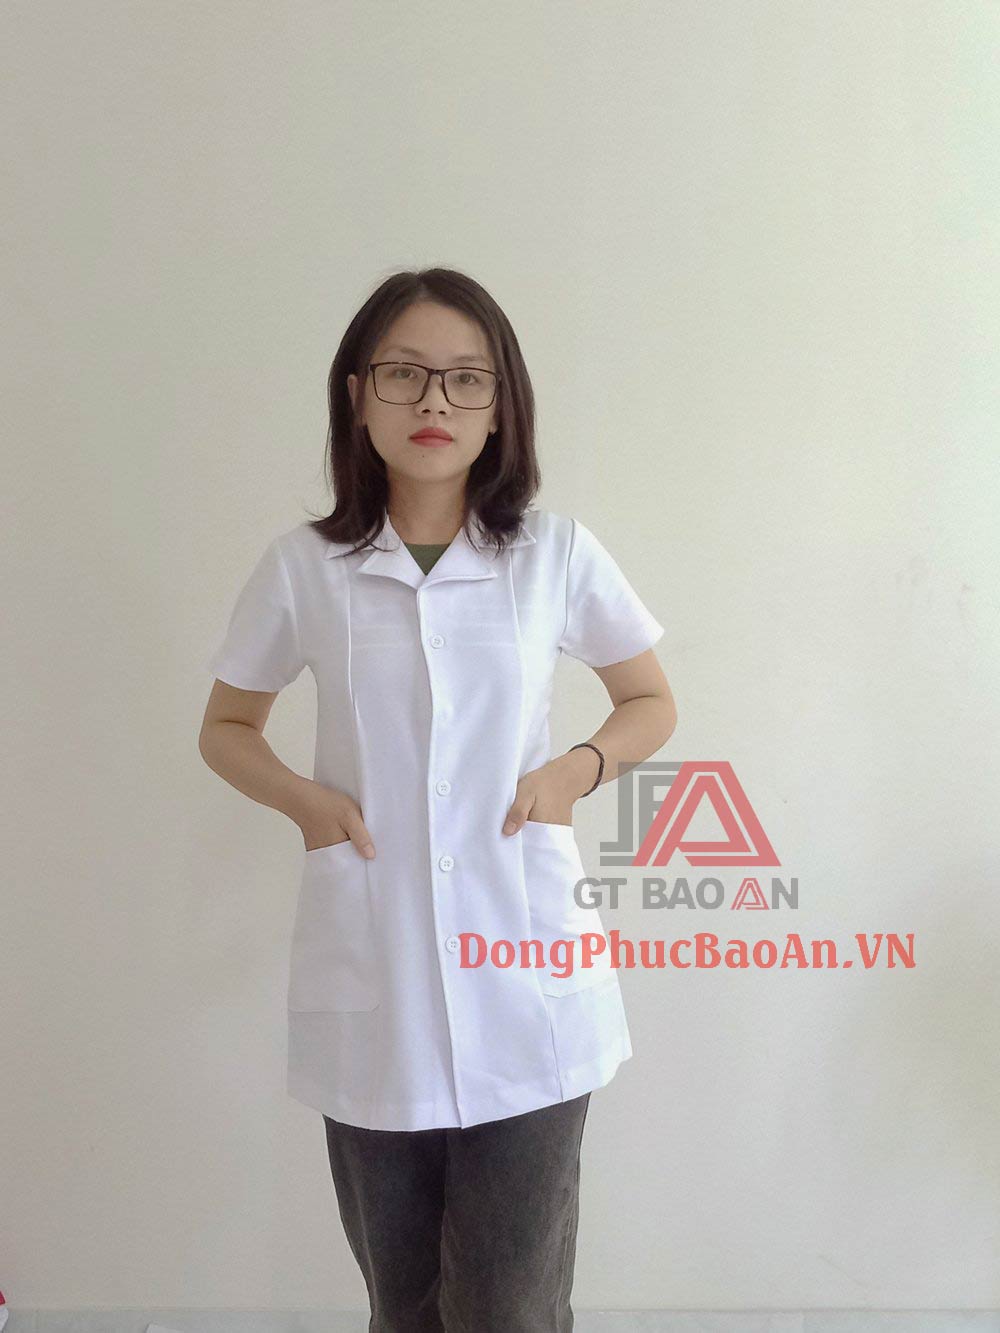 [Có Sẵn] Mẫu đồng phục áo blouse trắng cao cấp dành cho điều dưỡng - Chất liệu Cotton Hàn